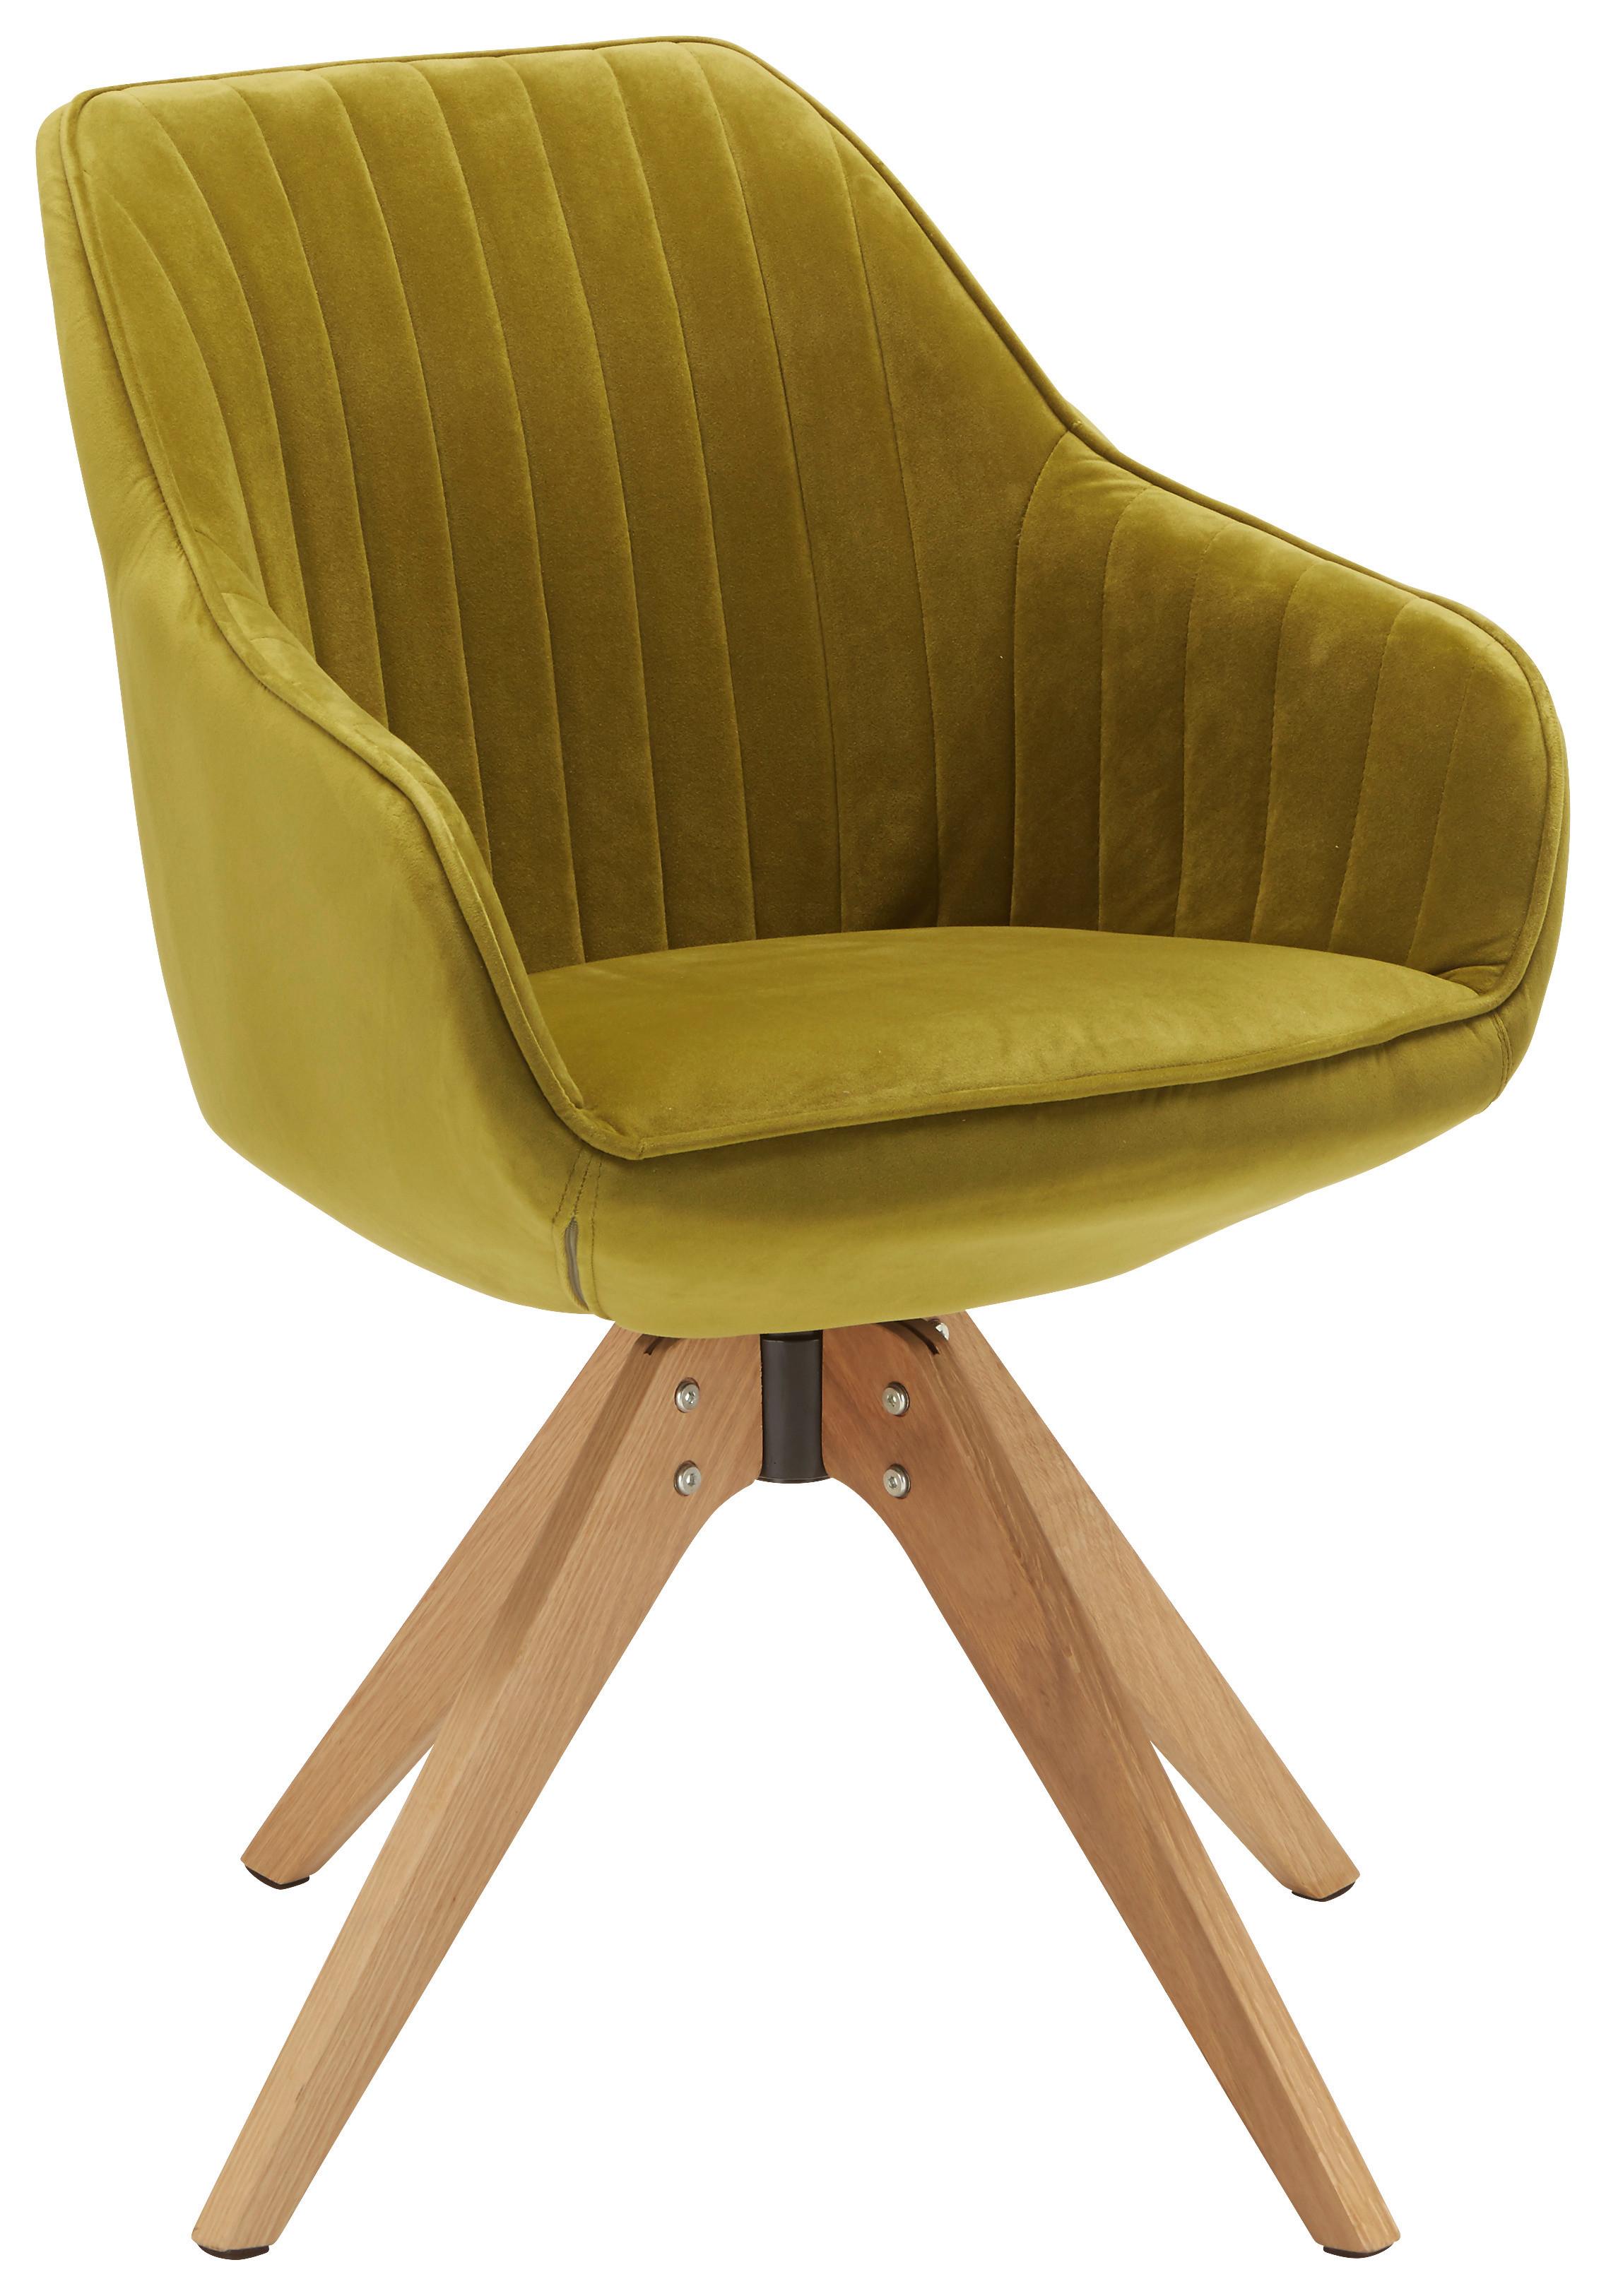 Stol Chill, Zelena - barve hrasta/zelena, tekstil/les (60/83/65cm) - Premium Living